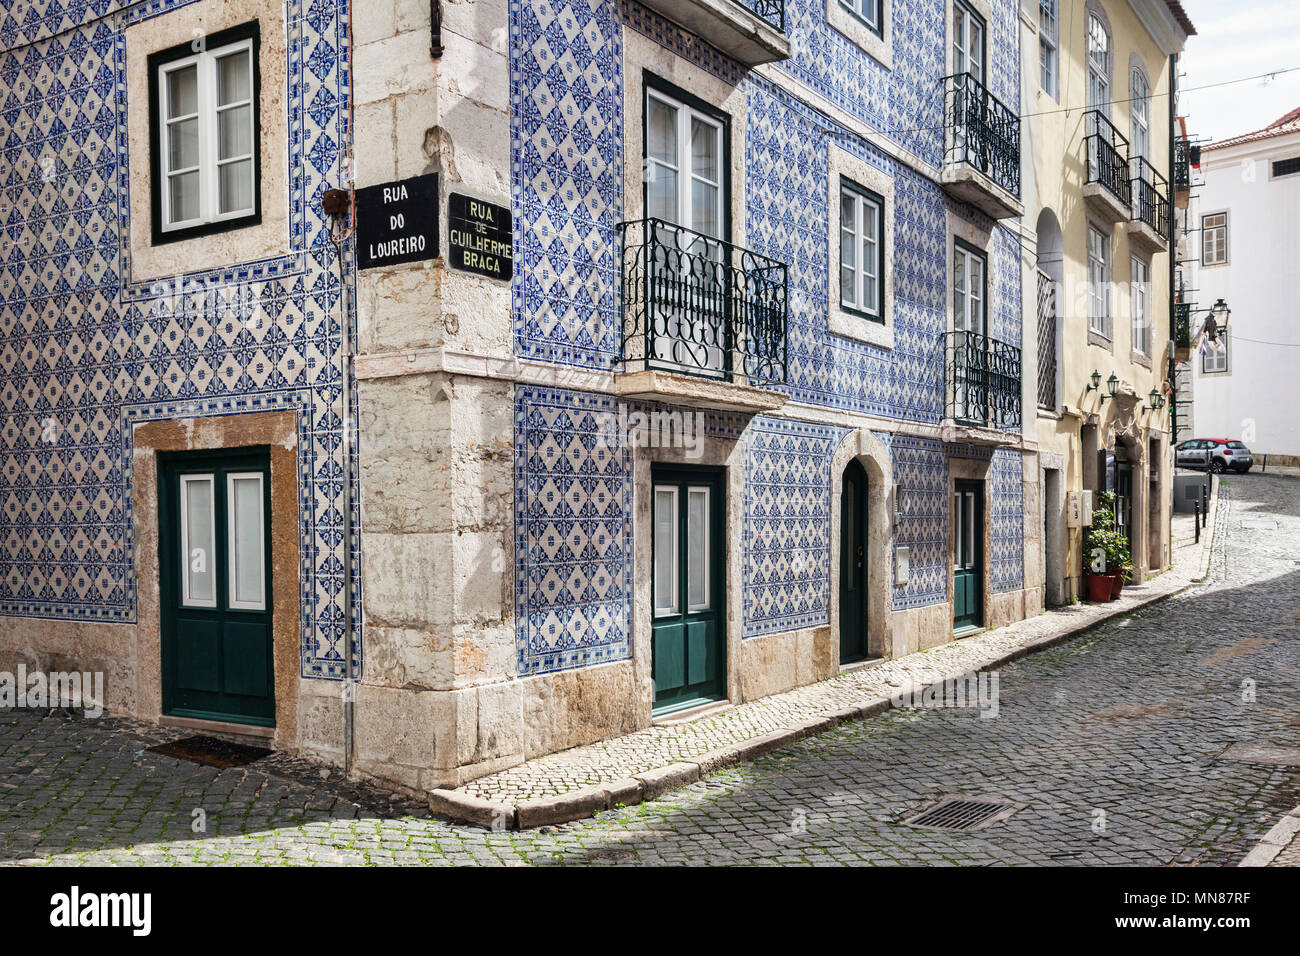 Vom 7. März 2018: Lissabon, Portugal - Traditionelle keramische Fliesen- Haus mit schmiedeeisernen Balkonen an der Ecke der Rua de Loureiro und Rua de Guilherme Bra Stockfoto